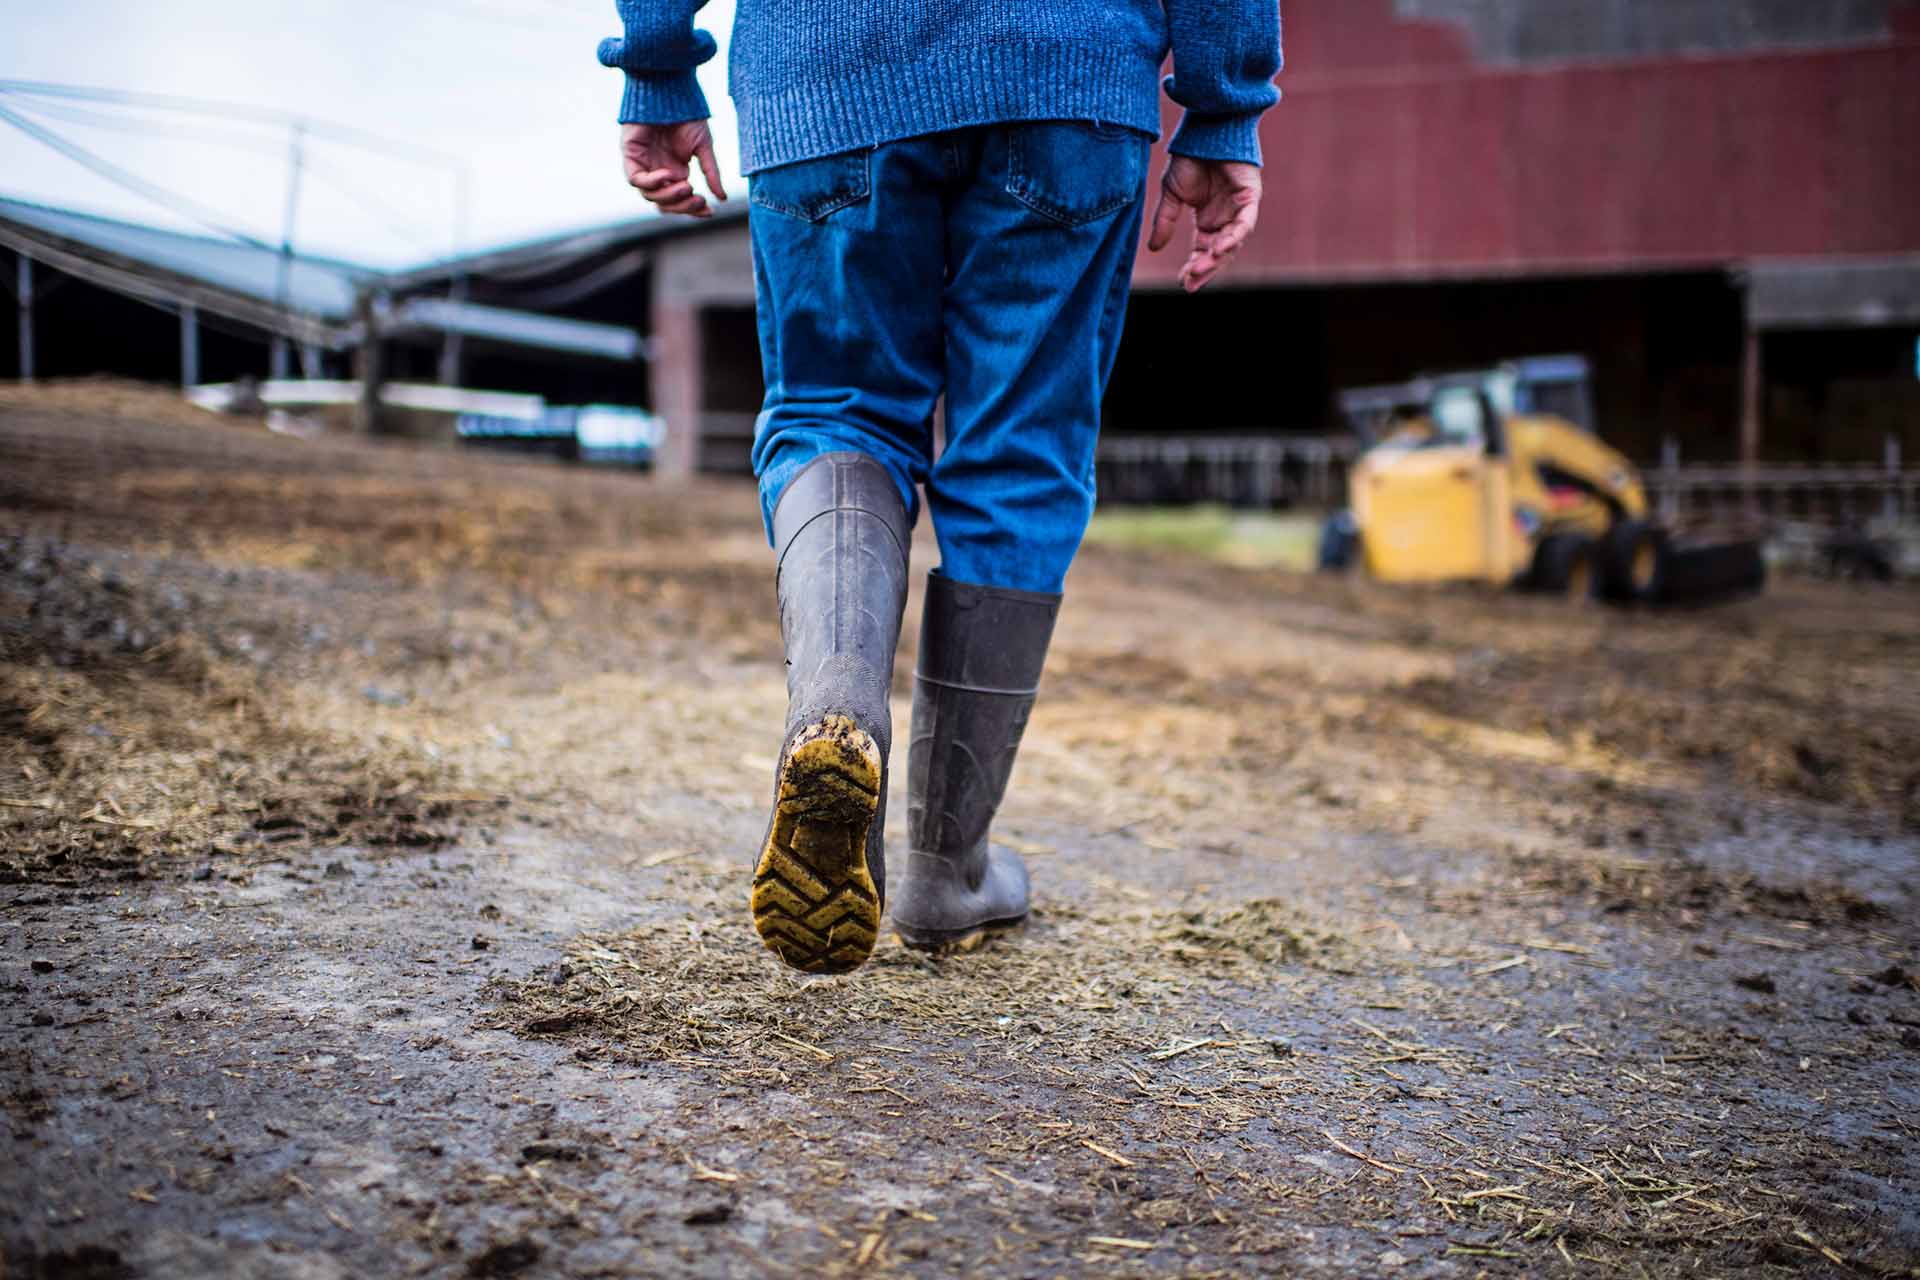 albert straus walking through farm wearing boots